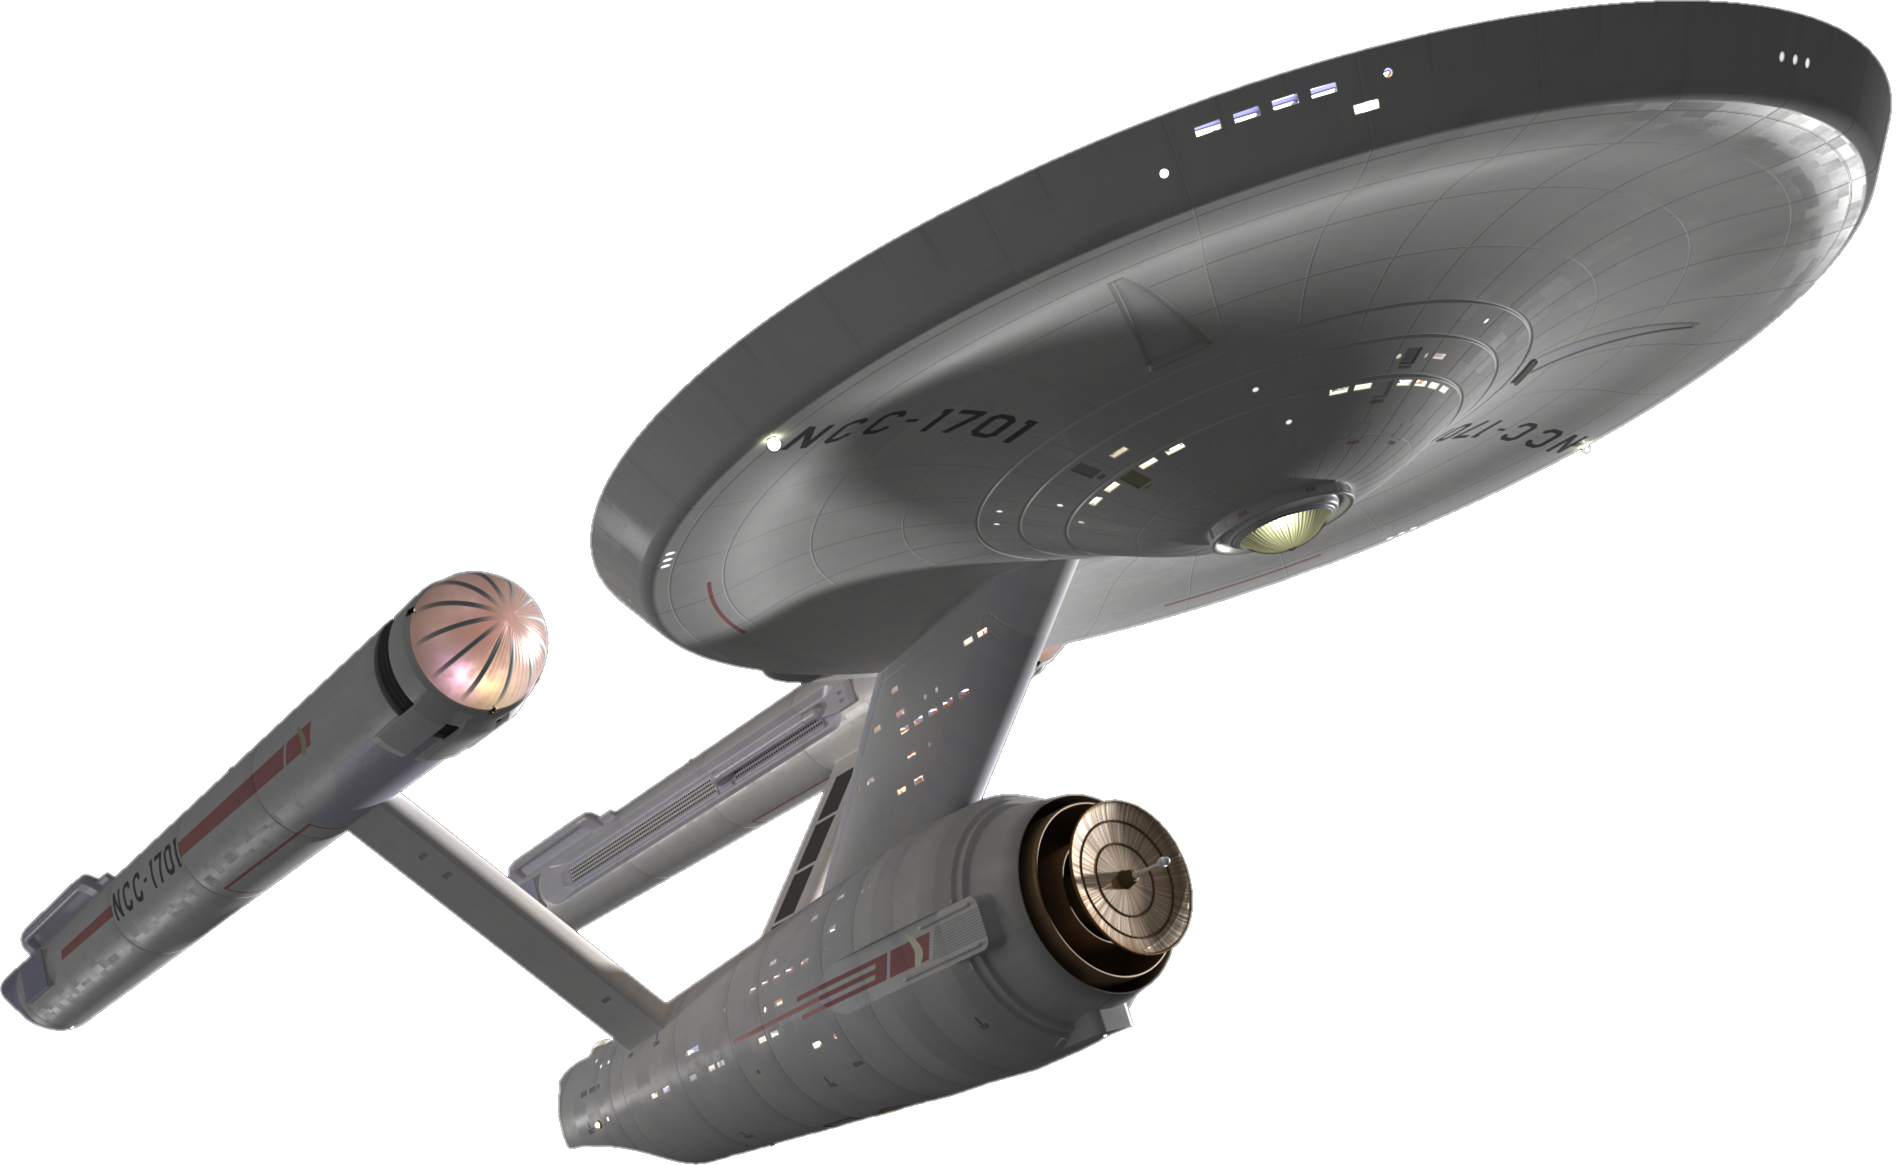 3D USS Enterprise Hi-Res by T